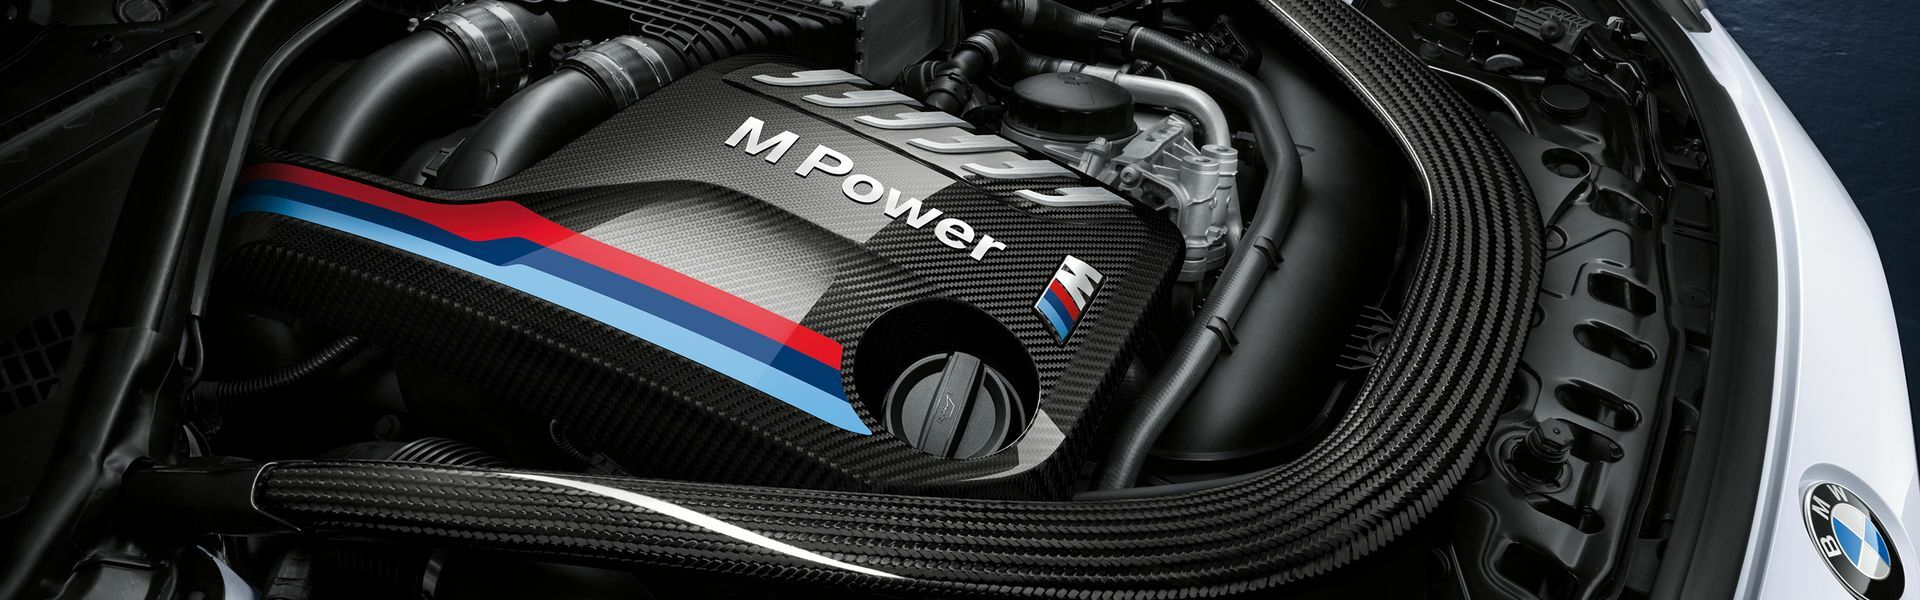 Zvýšení výkonu/ Softwarové úpravy/ Drobné performance díly pro automobil Mercedes Roadster GT / GT S / GT C